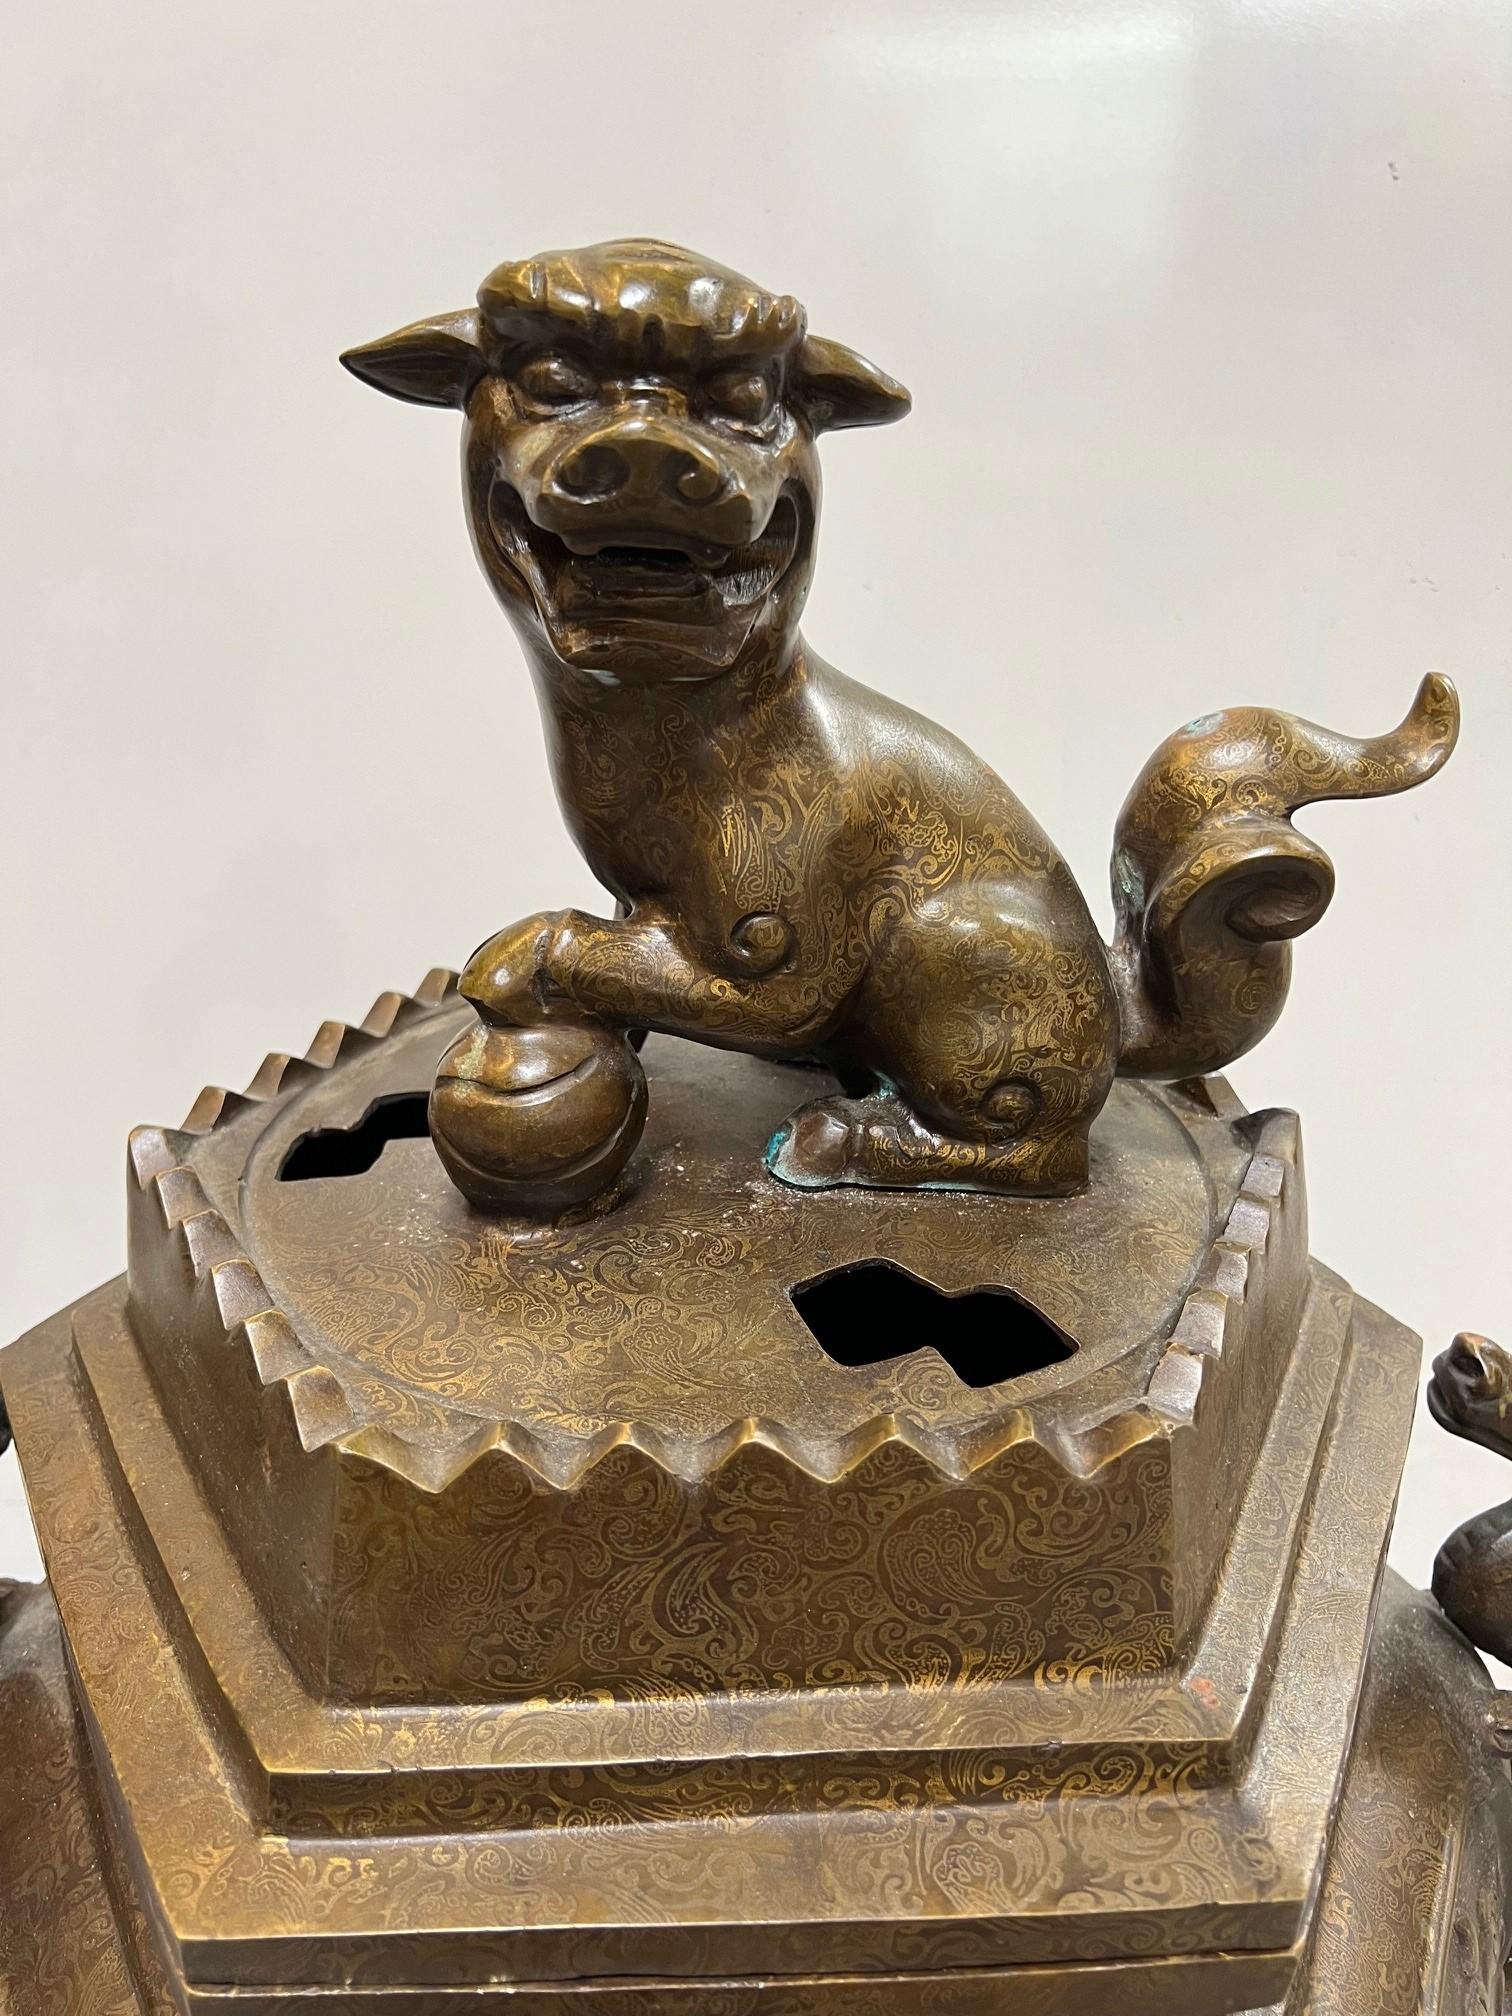 Großes Bronzegefäß des frühen 20. Jahrhunderts auf drei Beinen mit einem sitzenden Foo Dog und chinesischen Drachen auf jeder Seite. Räuchergefäße, auch bekannt als Weihrauchkessel, haben in China eine lange Geschichte, die bis in die Antike